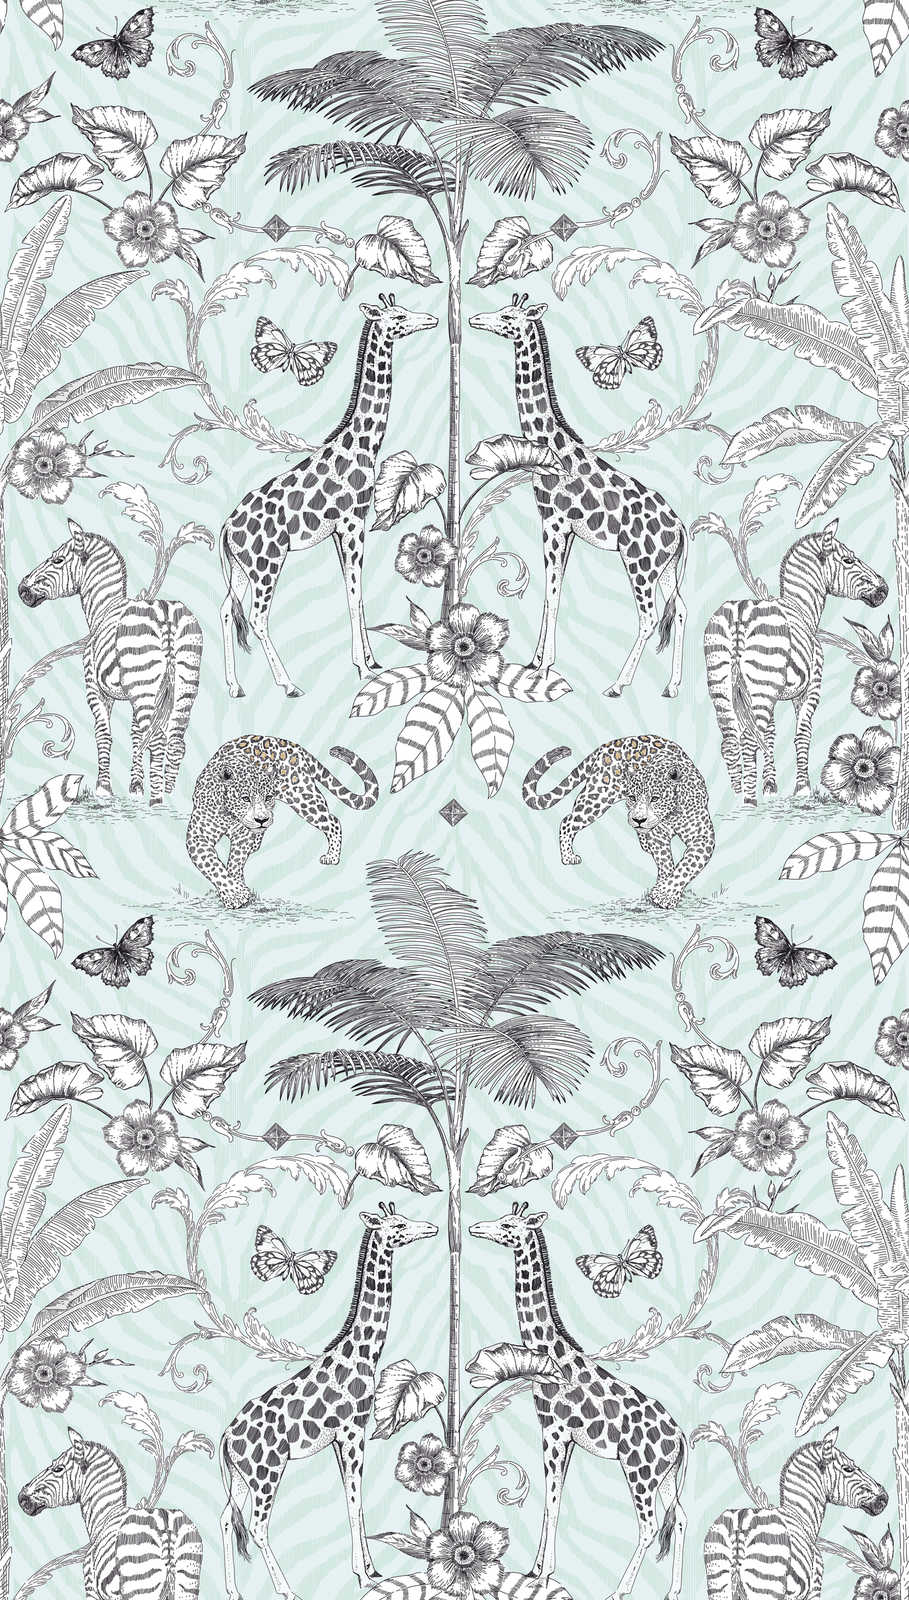             Papier peint intissé motif jungle avec animaux et plantes - noir, blanc, gris
        